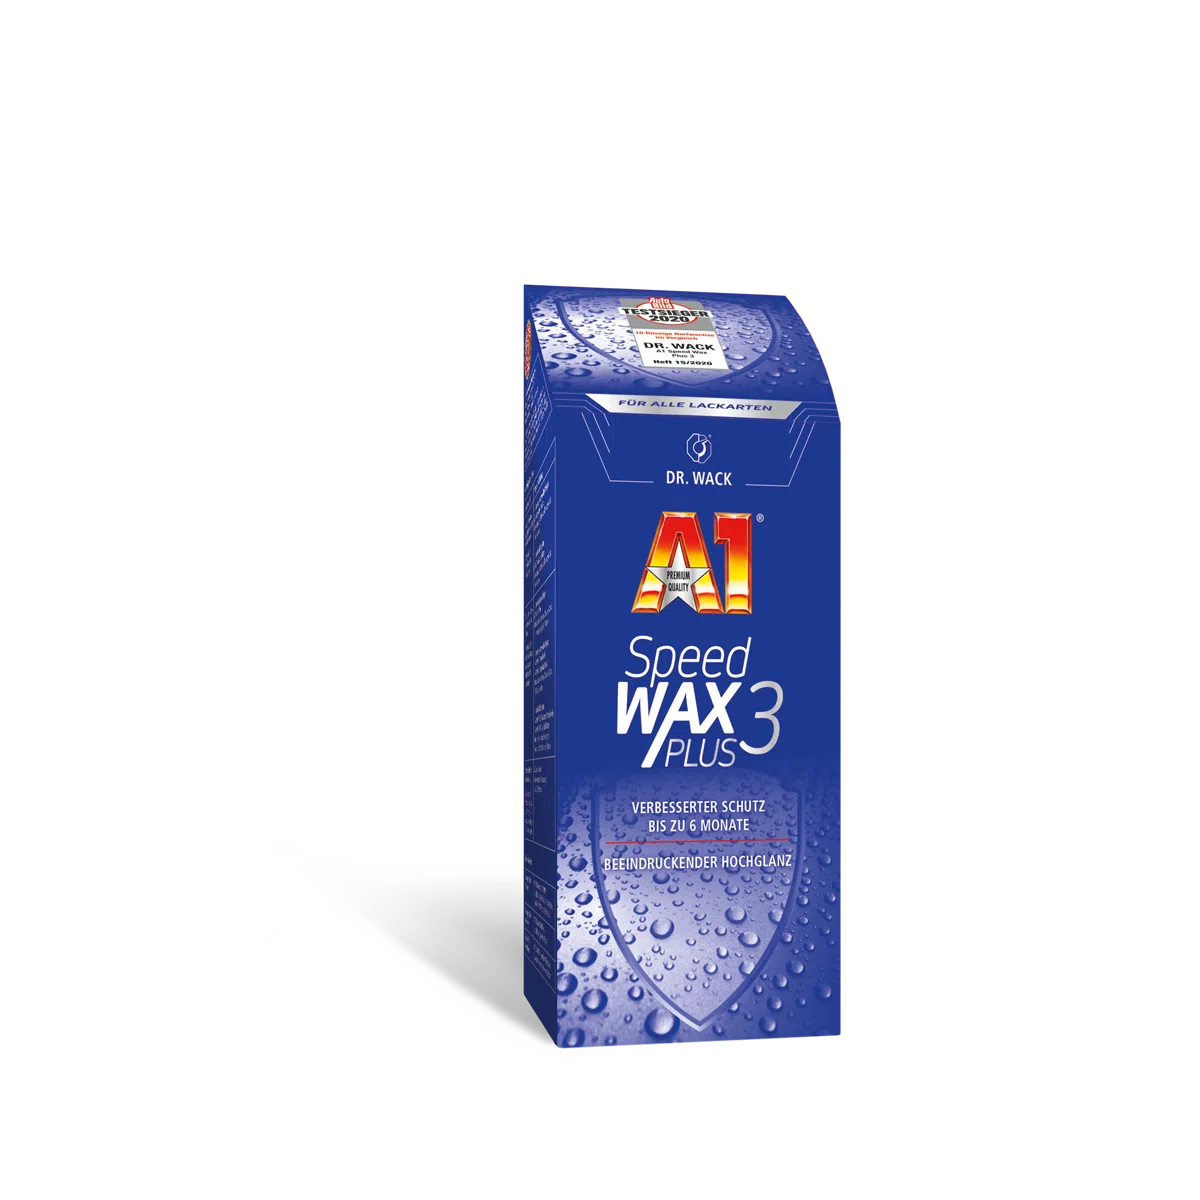 Dr. Wack A1 Speed Wax Plus 3 250 Milliliter